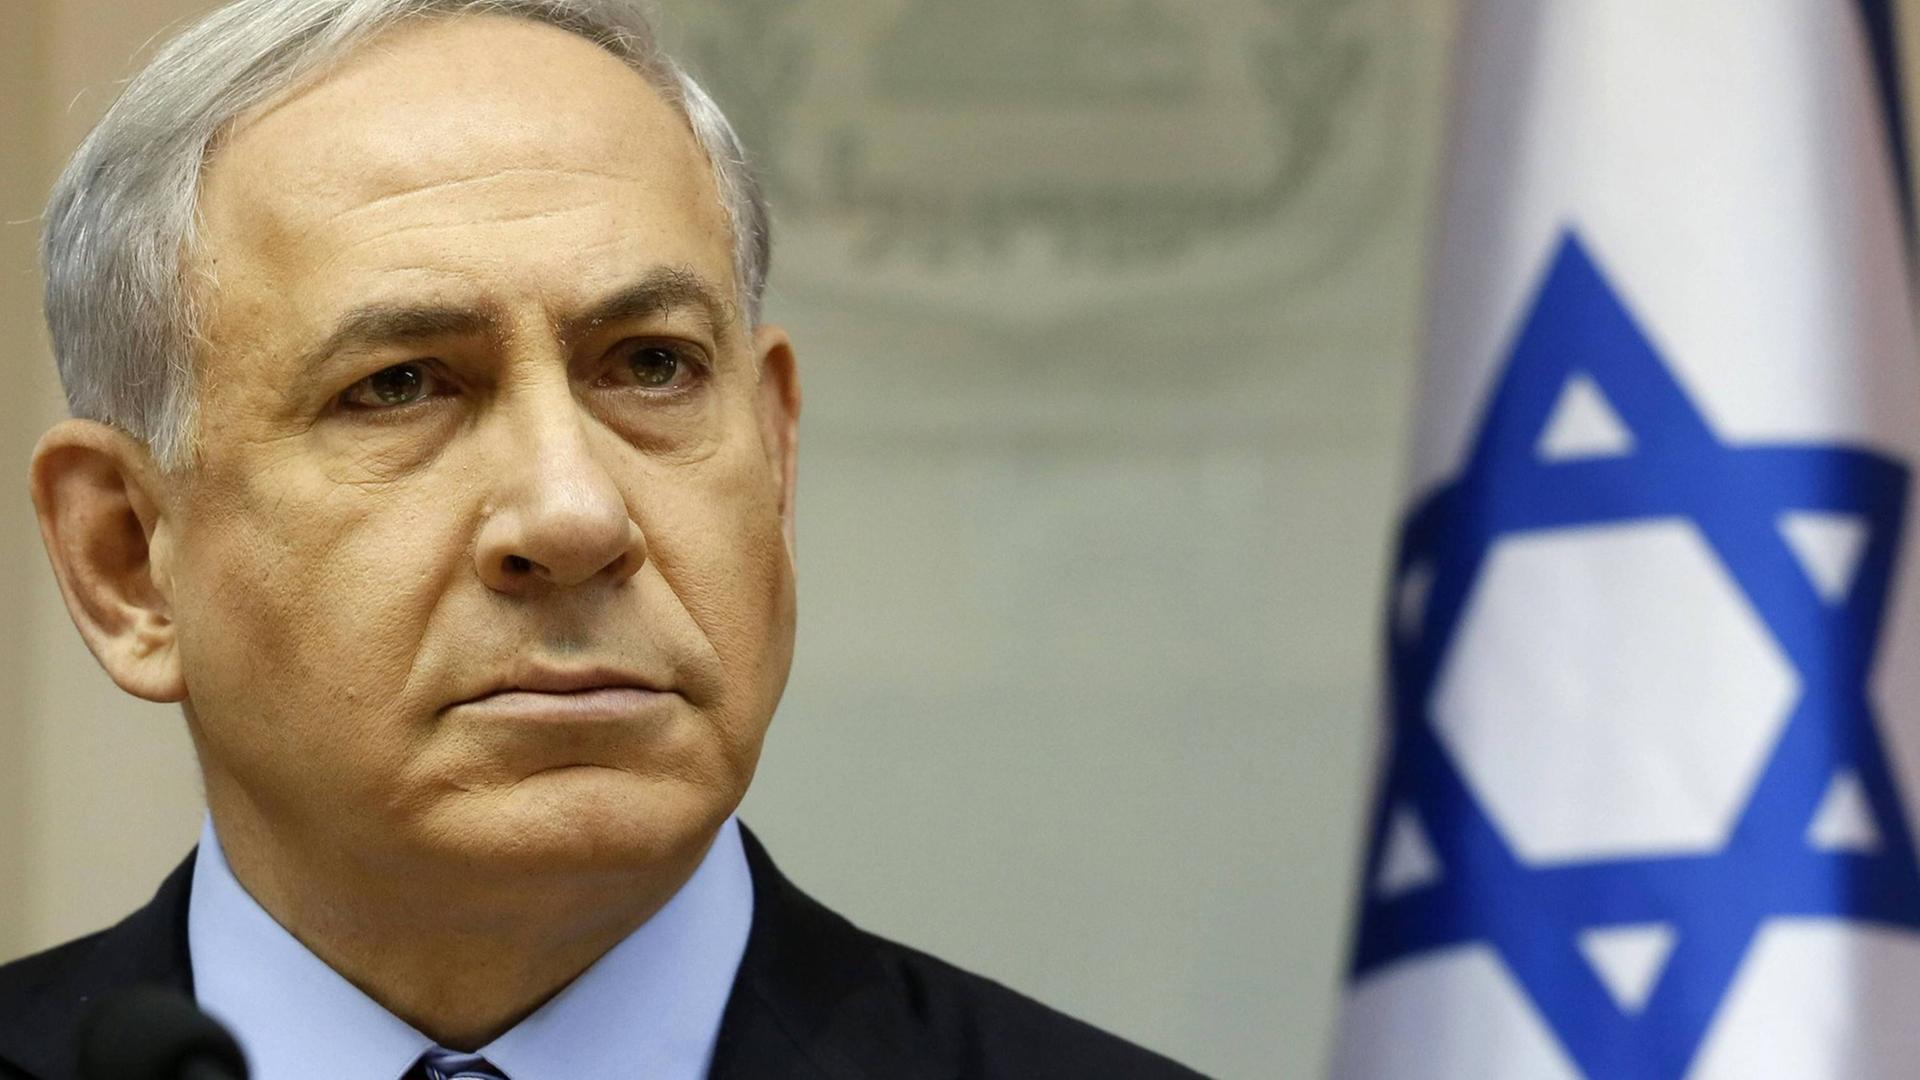 Benjamin Netanjahu steht mit ernstem Gesicht neben einer Israel-Fahne